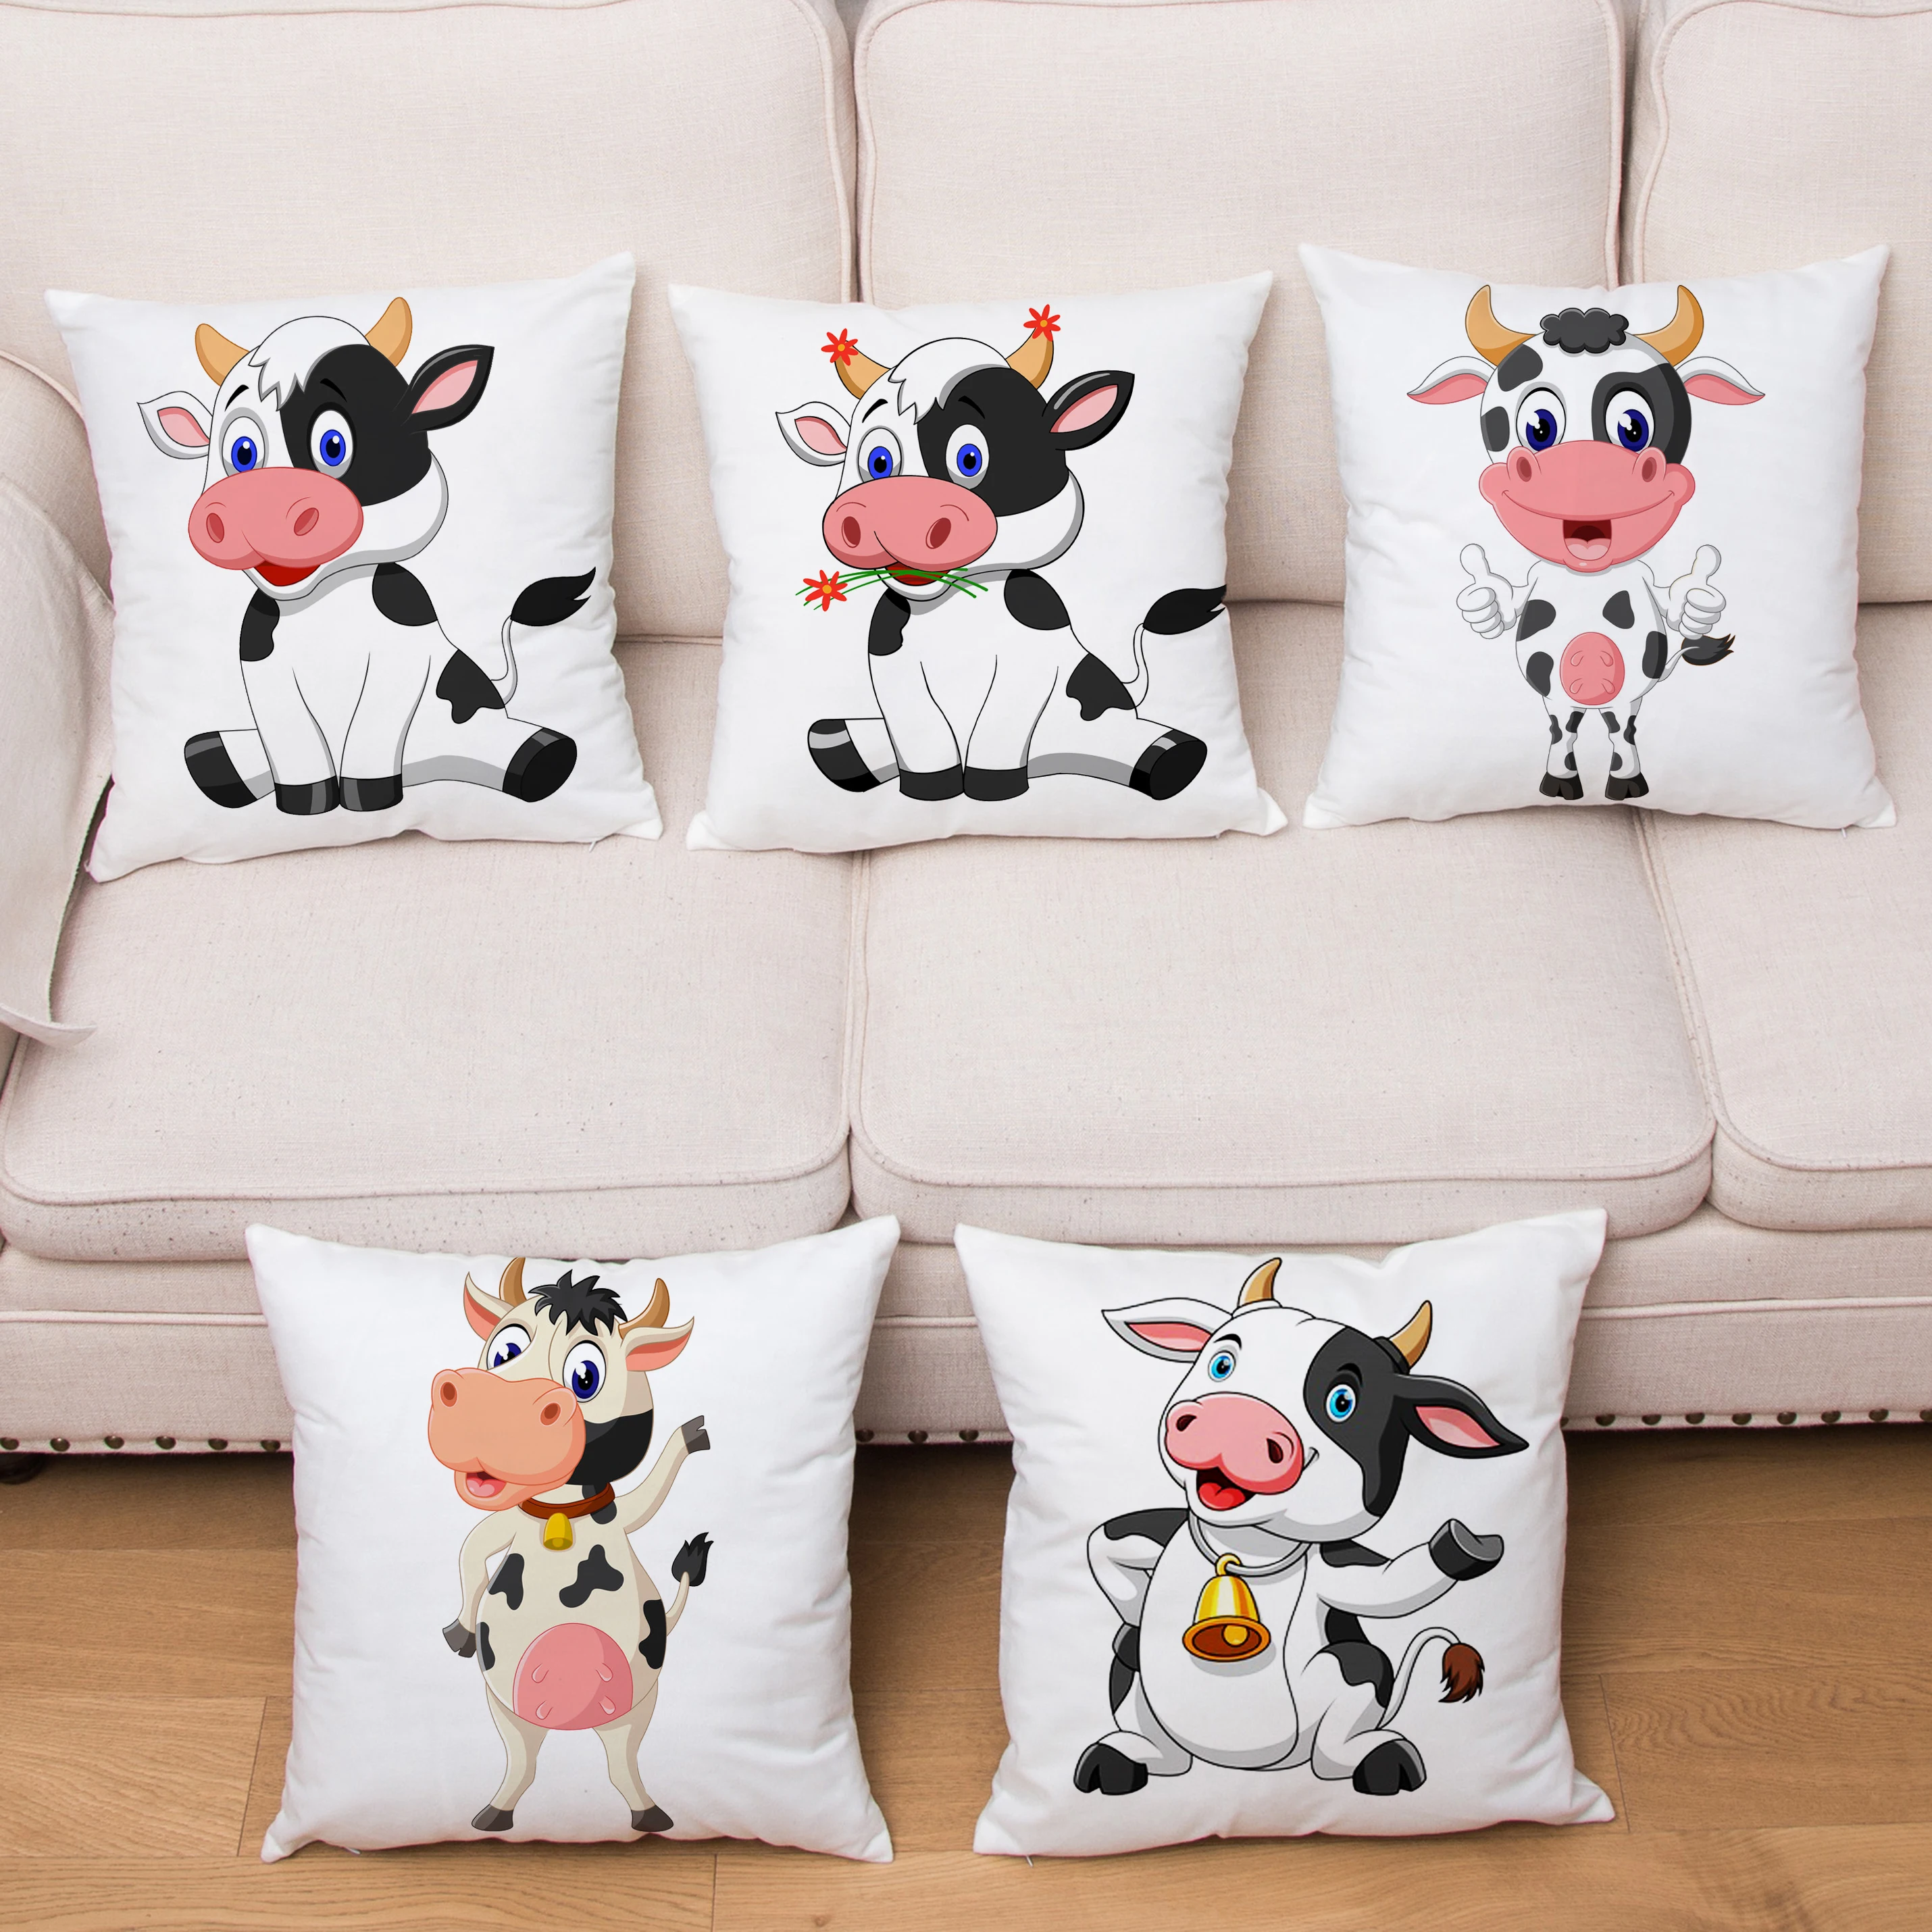 Funny Dairy Cow Print Cushion Cover Cartoon Soft Plush Throw Pillows Covers Kid Gift Sofa Home Decor Pillowcase